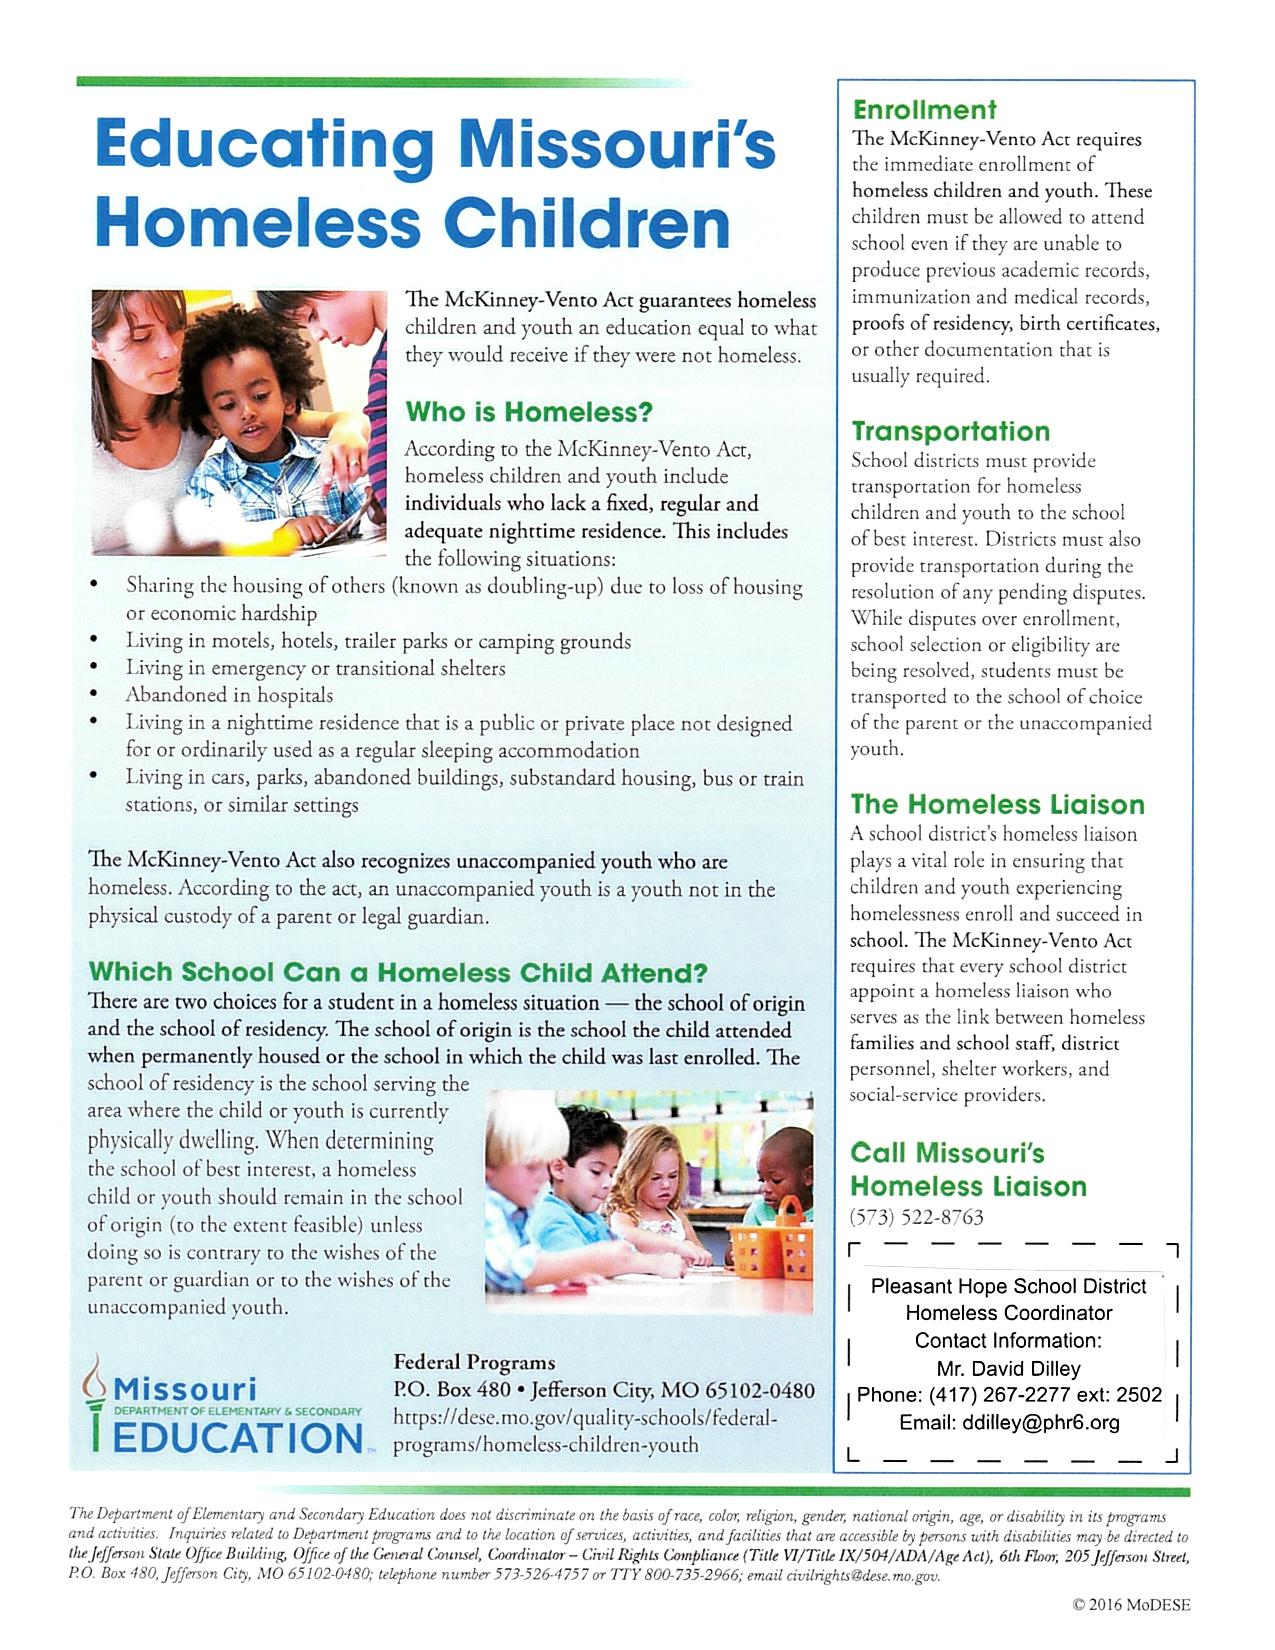 Educating Missouri's Homeless Children